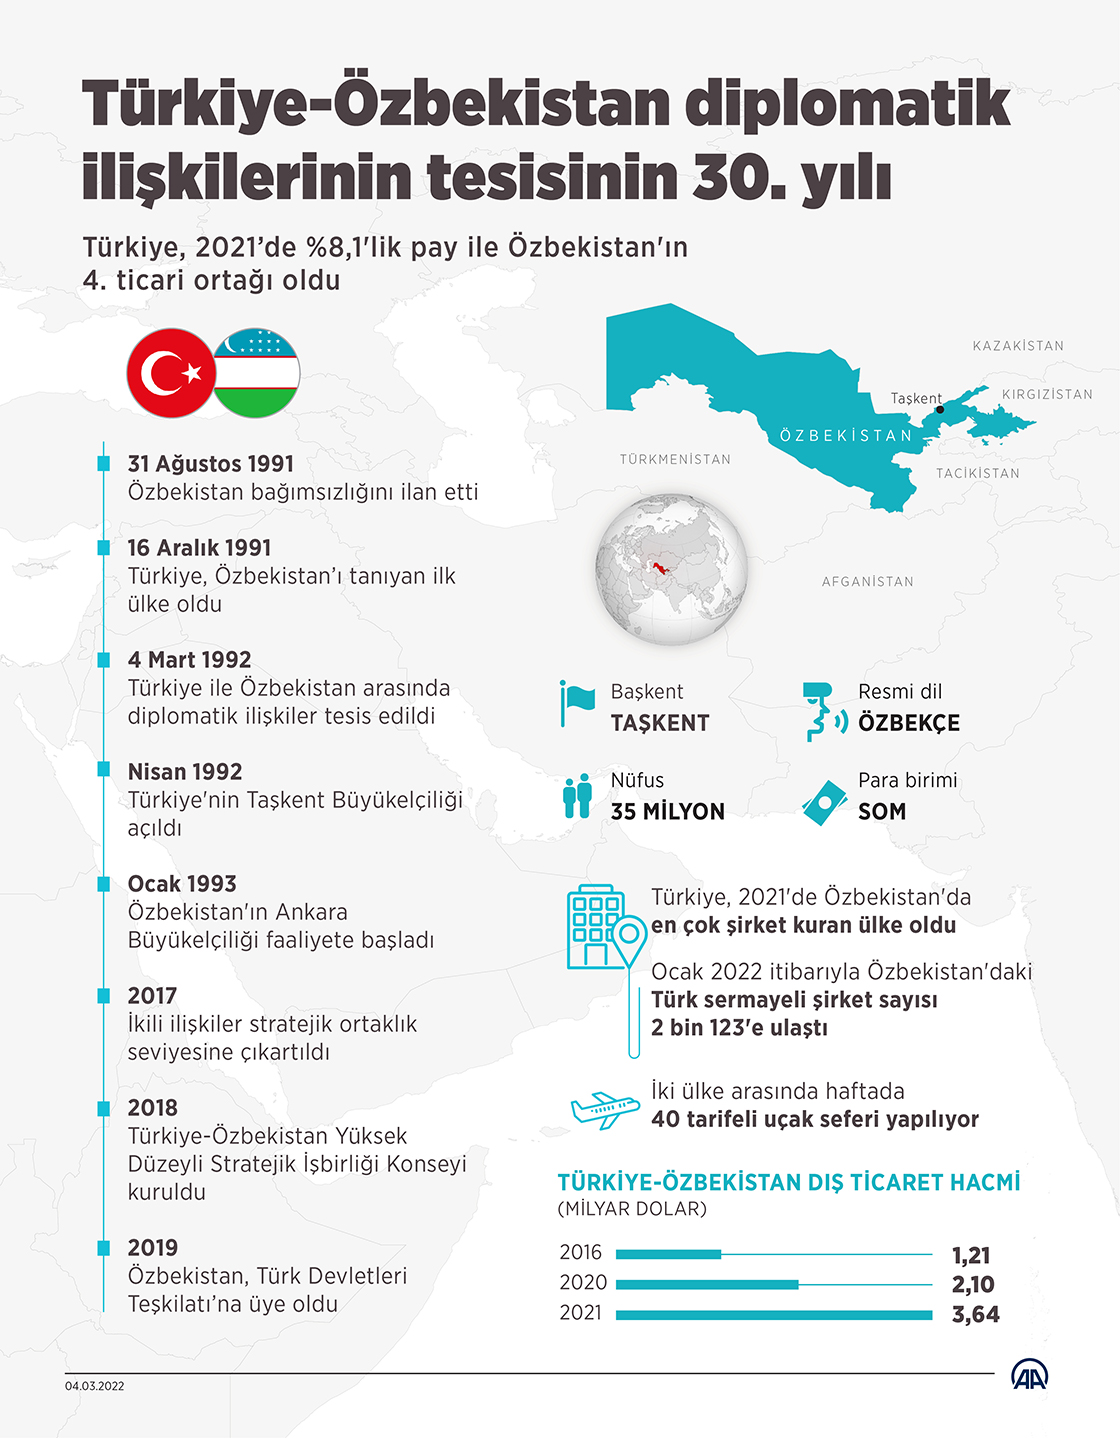 Türkiye-Özbekistan diplomatik ilişkilerinin tesisinin 30. yılı